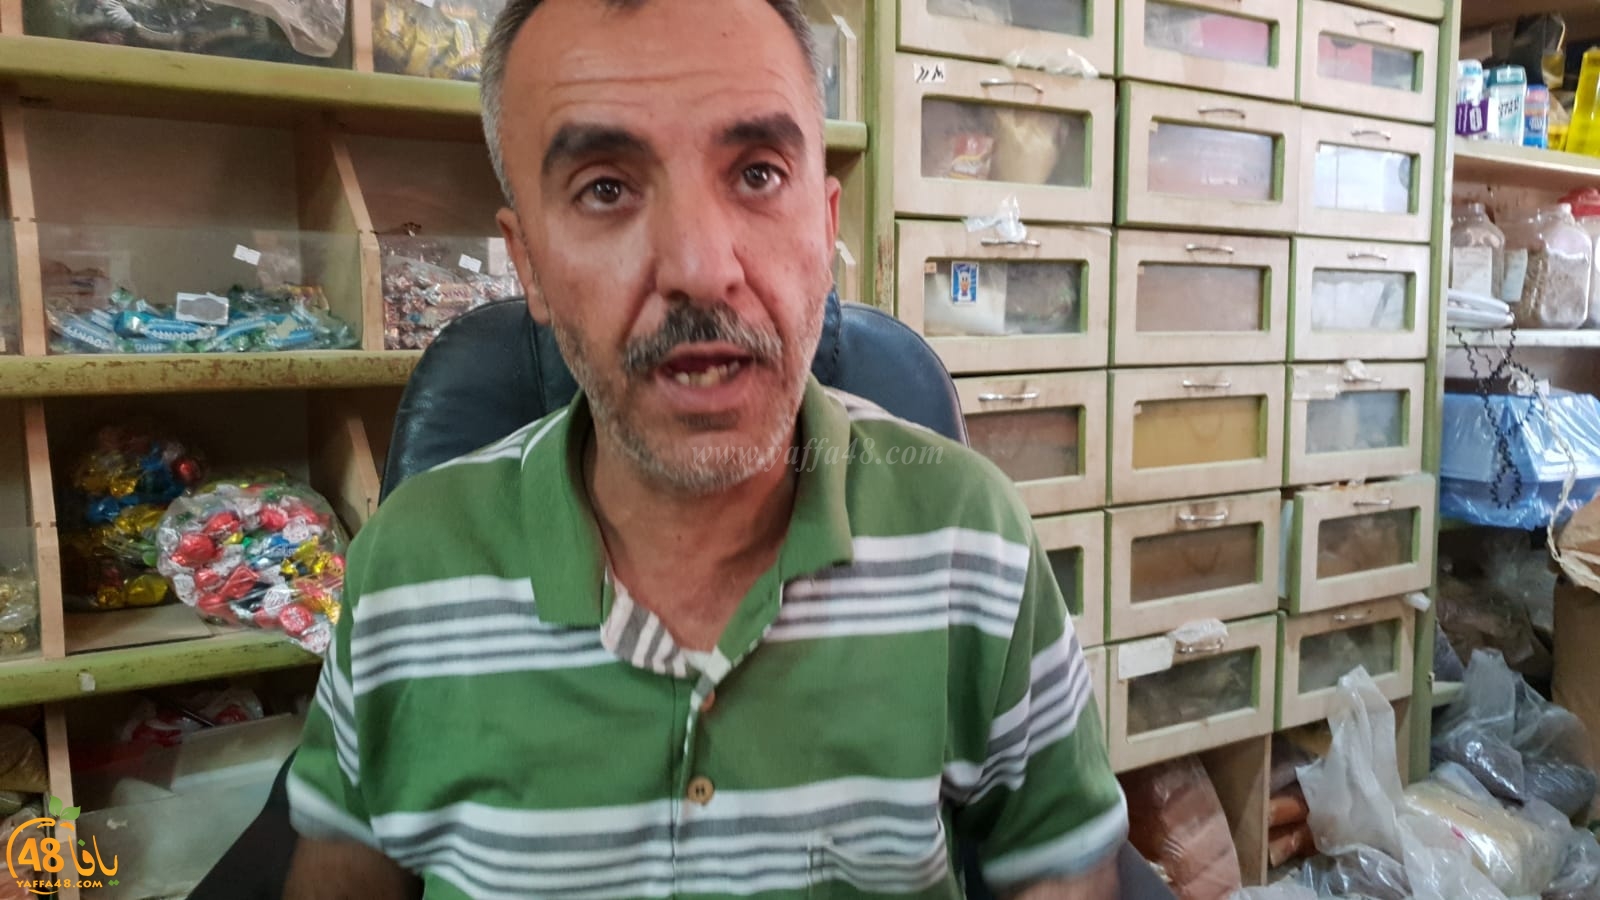  بالفيديو: أهالي نعلين يستنكرون الاعتداء على السيد فكتور زعرور من الرملة